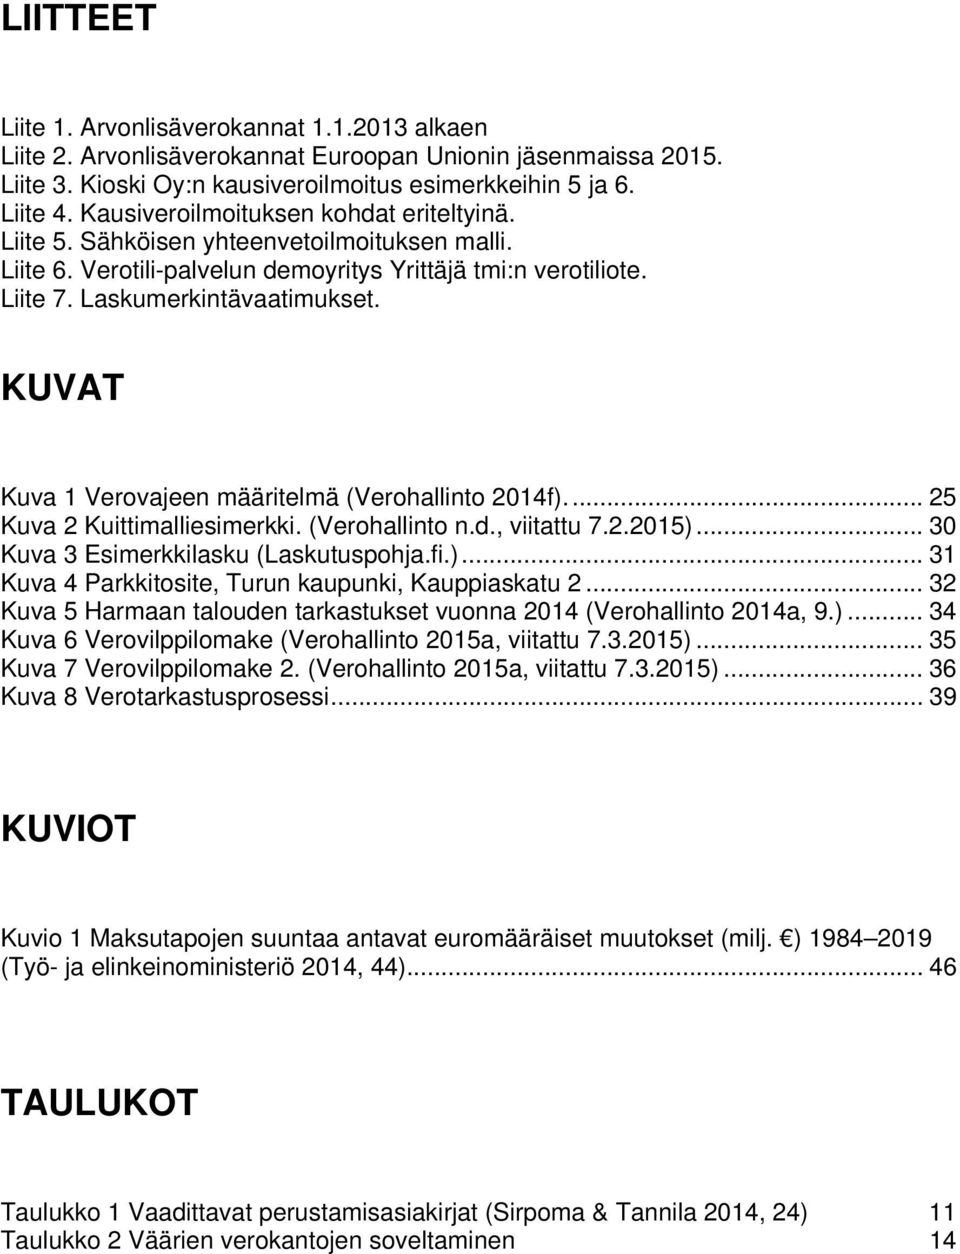 KUVAT Kuva 1 Verovajeen määritelmä (Verohallinto 2014f).... 25 Kuva 2 Kuittimalliesimerkki. (Verohallinto n.d., viitattu 7.2.2015)... 30 Kuva 3 Esimerkkilasku (Laskutuspohja.fi.)... 31 Kuva 4 Parkkitosite, Turun kaupunki, Kauppiaskatu 2.